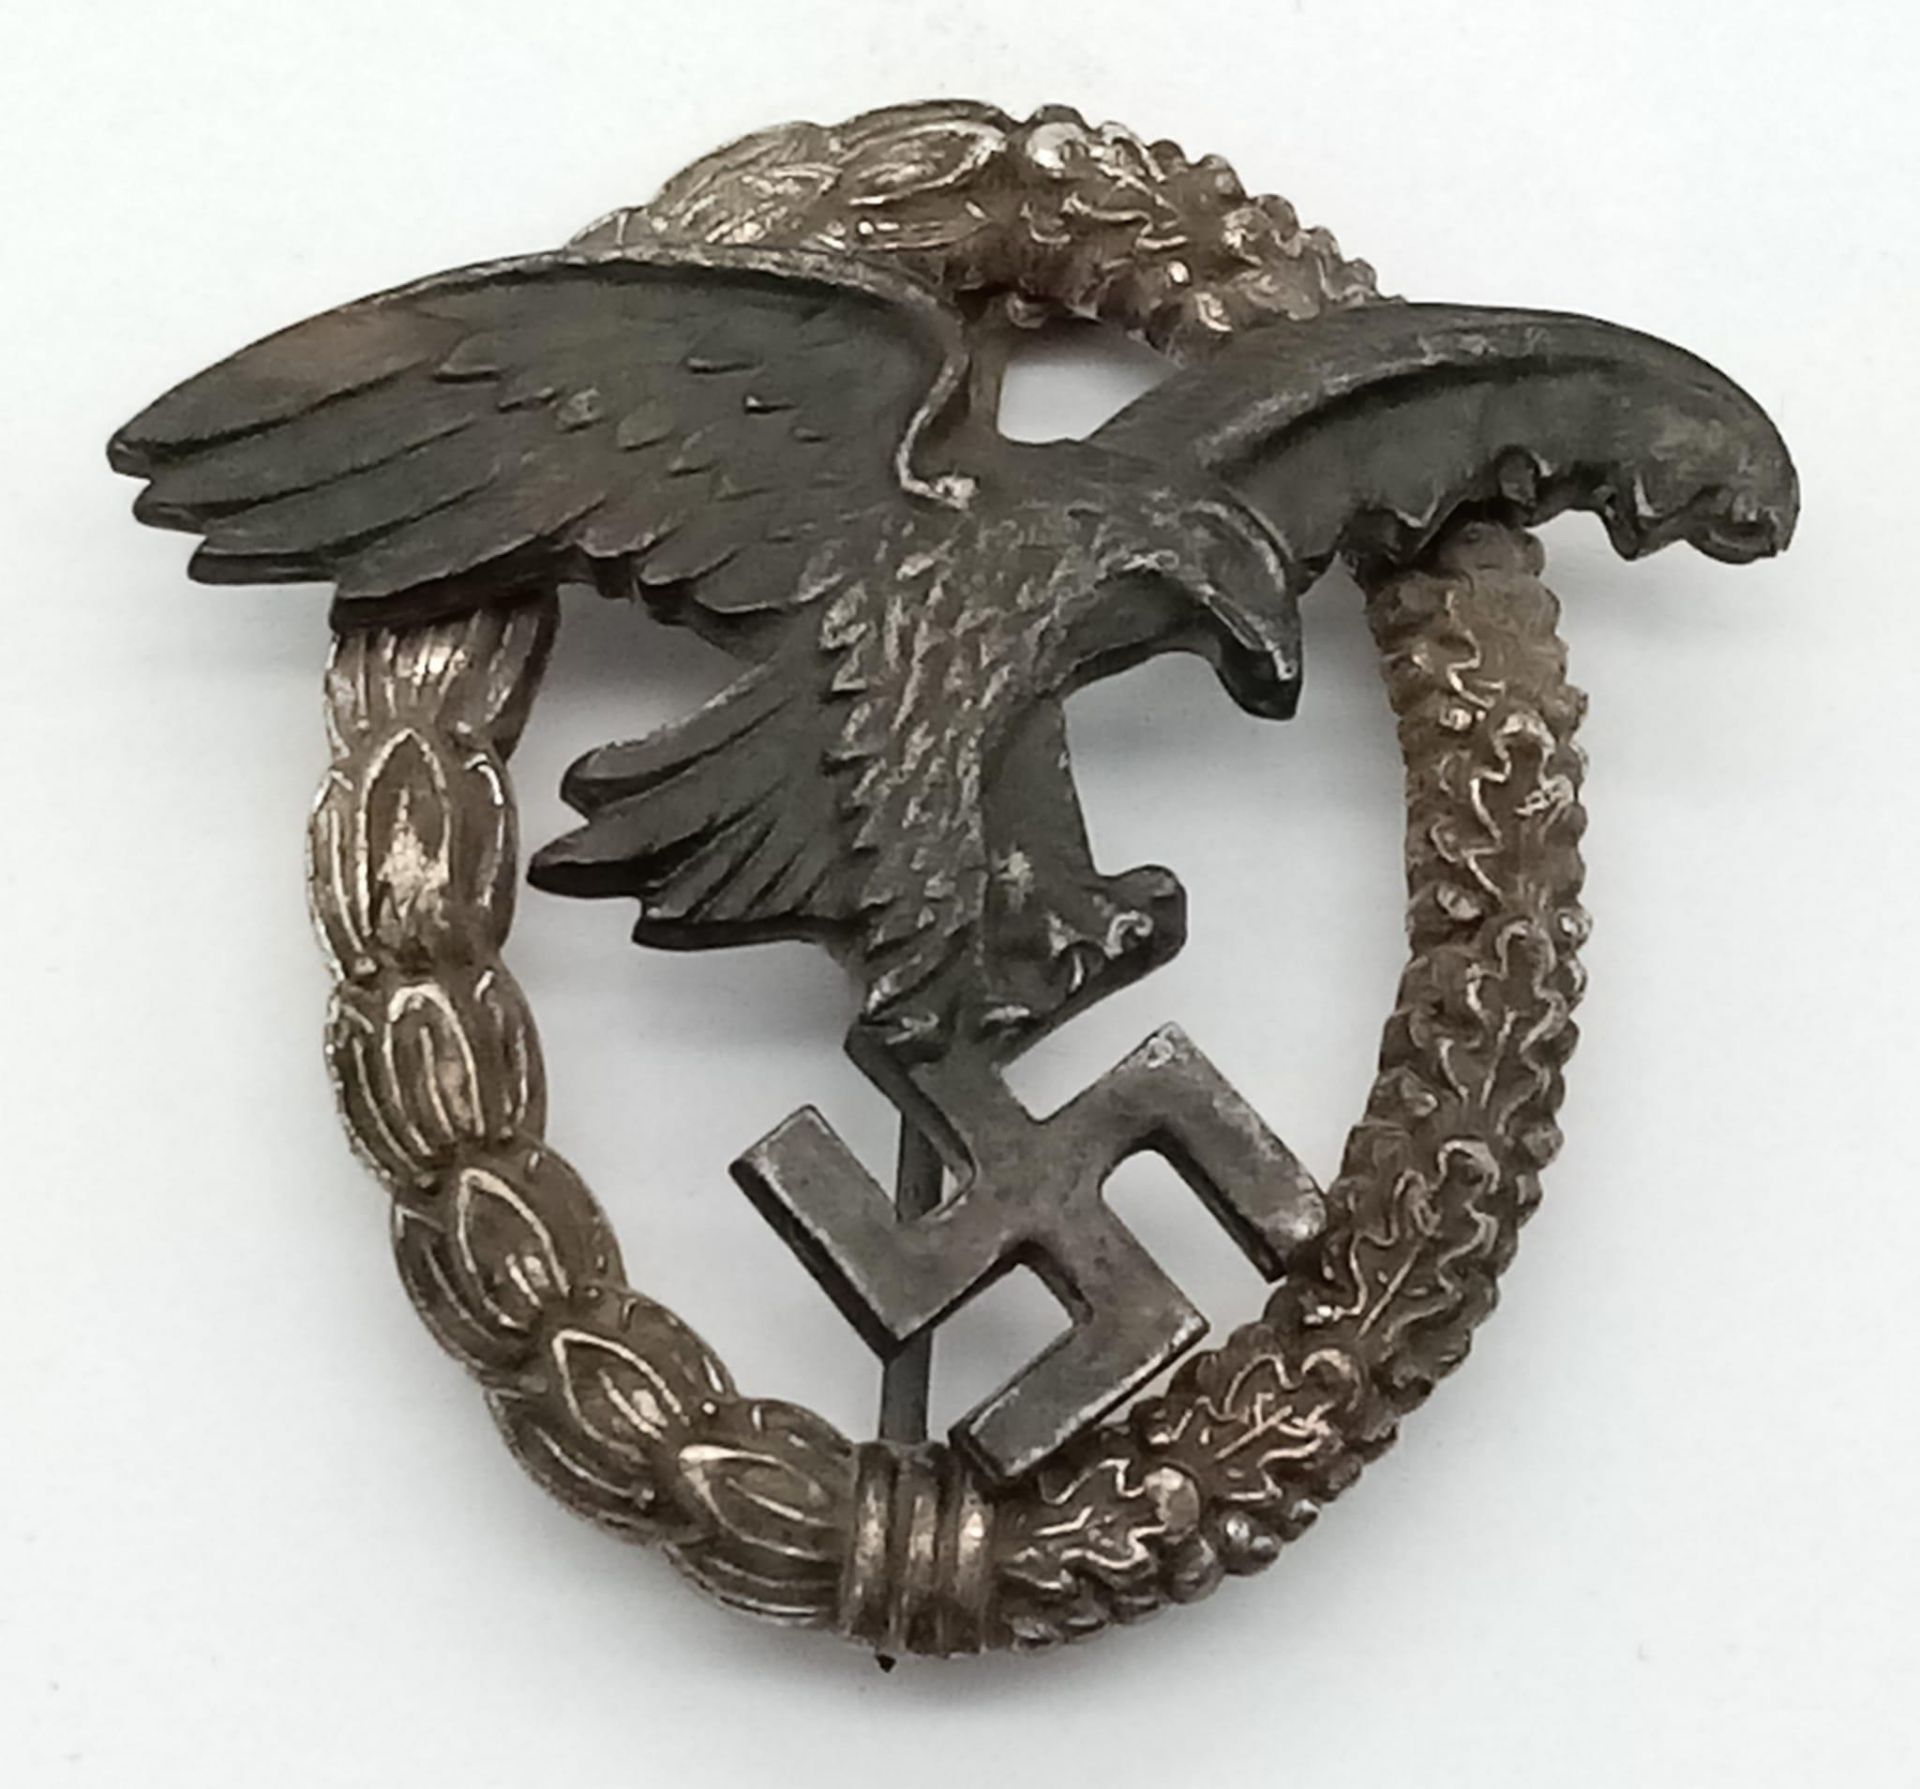 3rd Reich Luftwaffe Observers Badge. Maker Marked “BSW” for Brüder Scneider, Wien